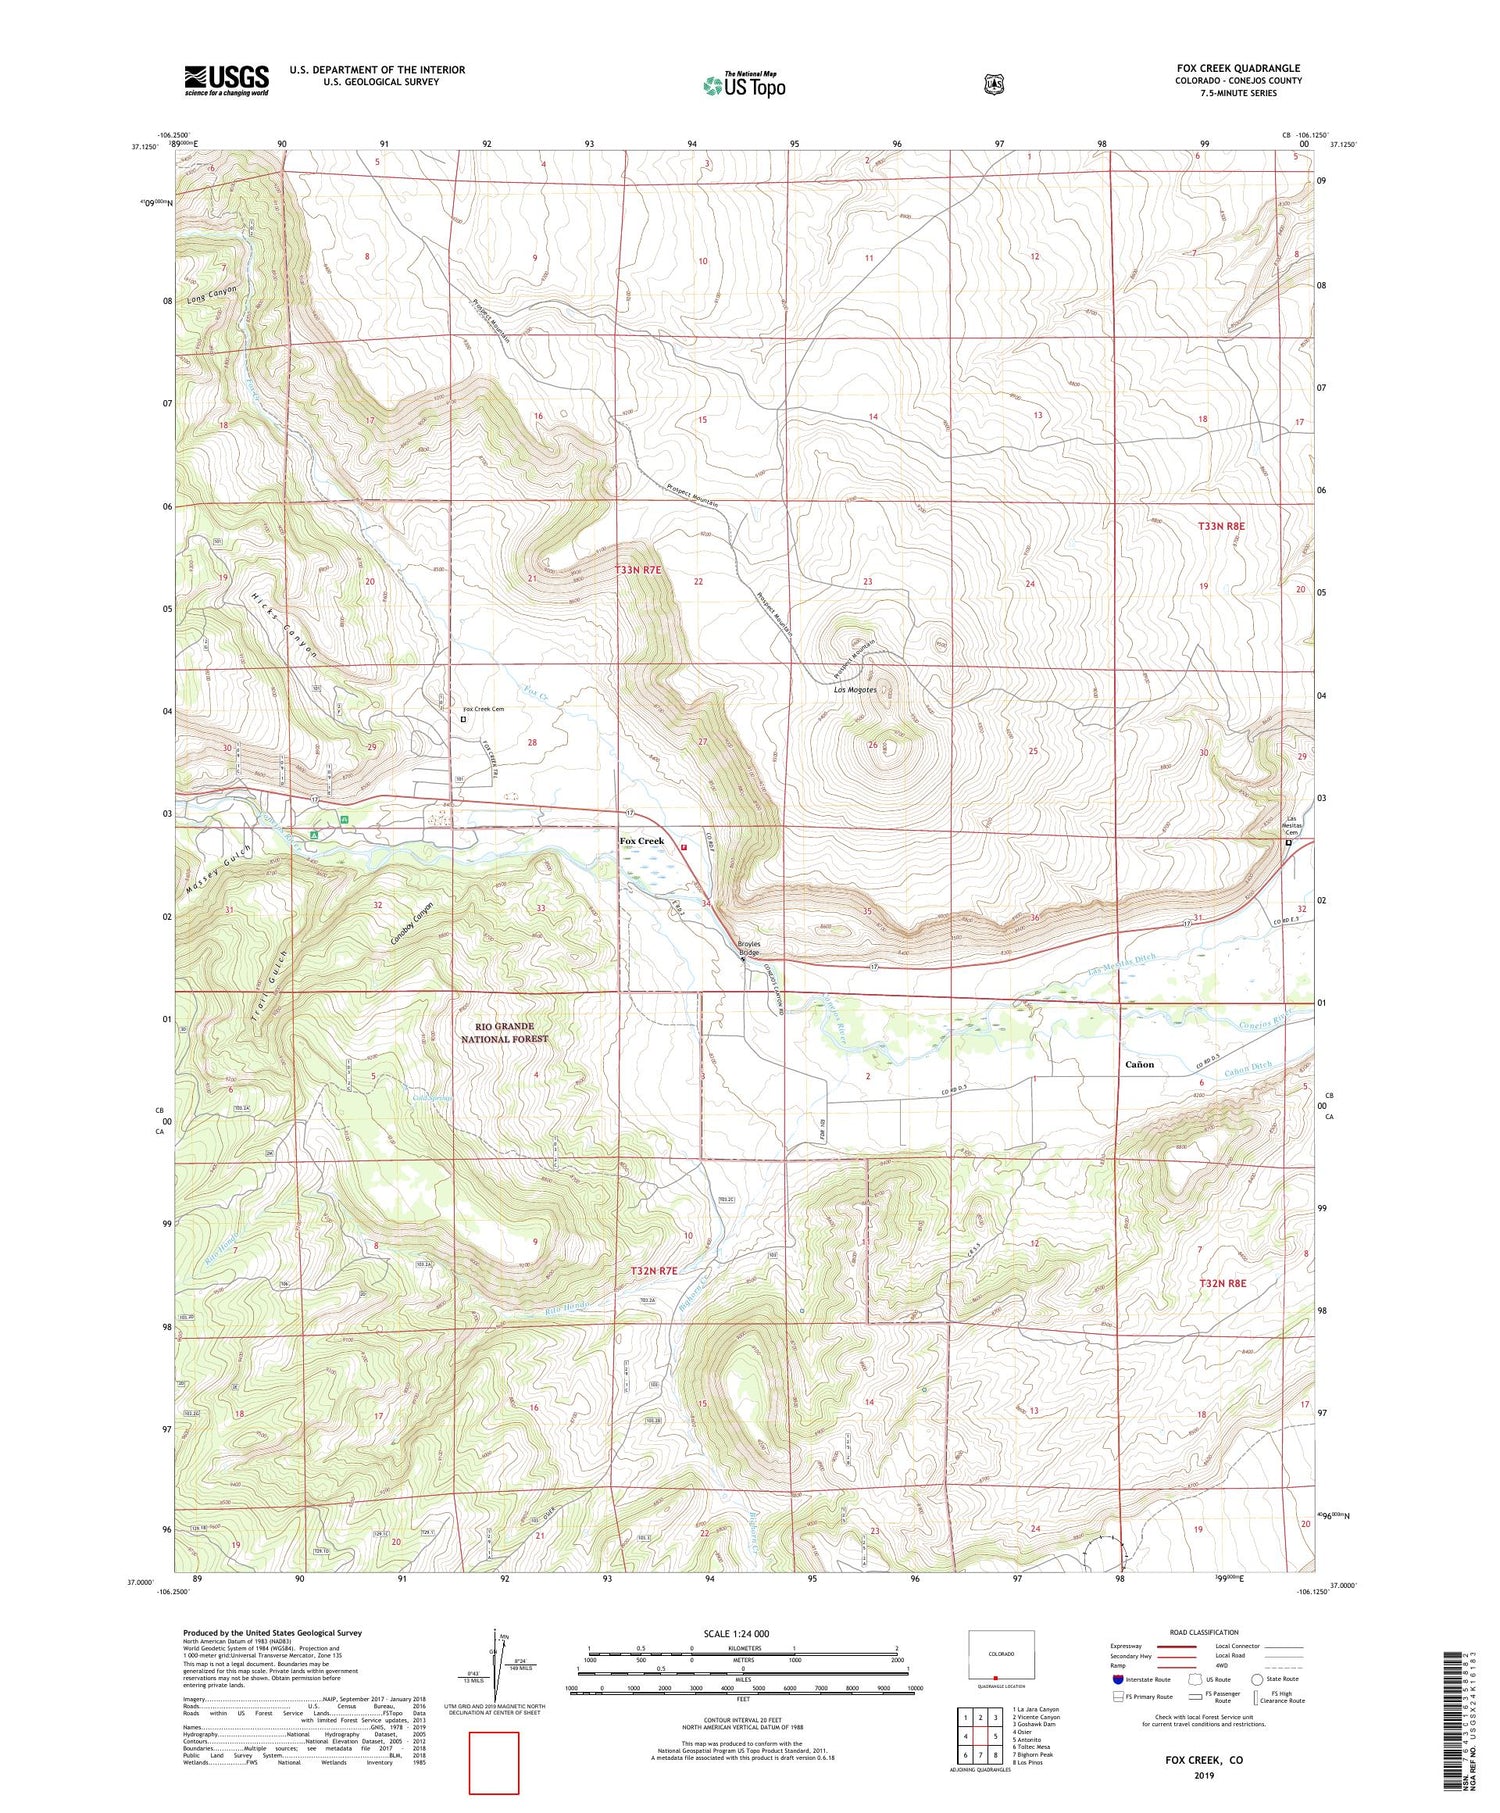 Fox Creek Colorado US Topo Map Image